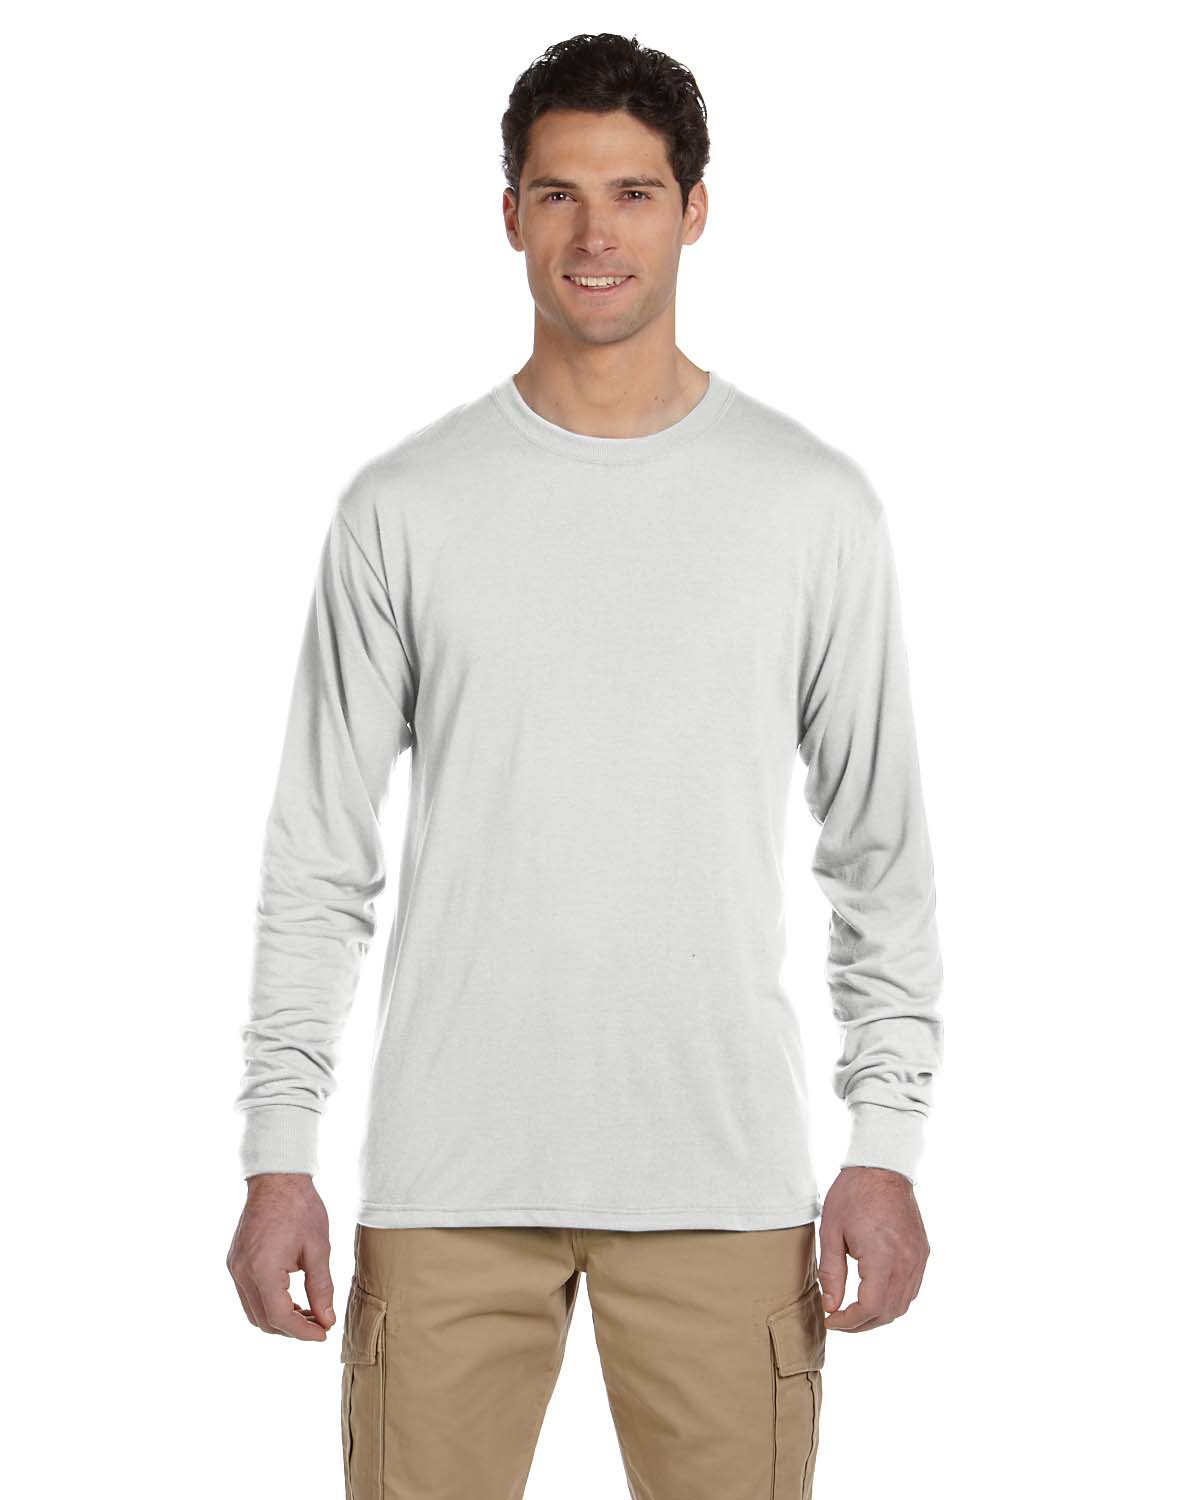 DEDRA men's t-shirt BH5TW-XXL XXL, white, 100% cotton